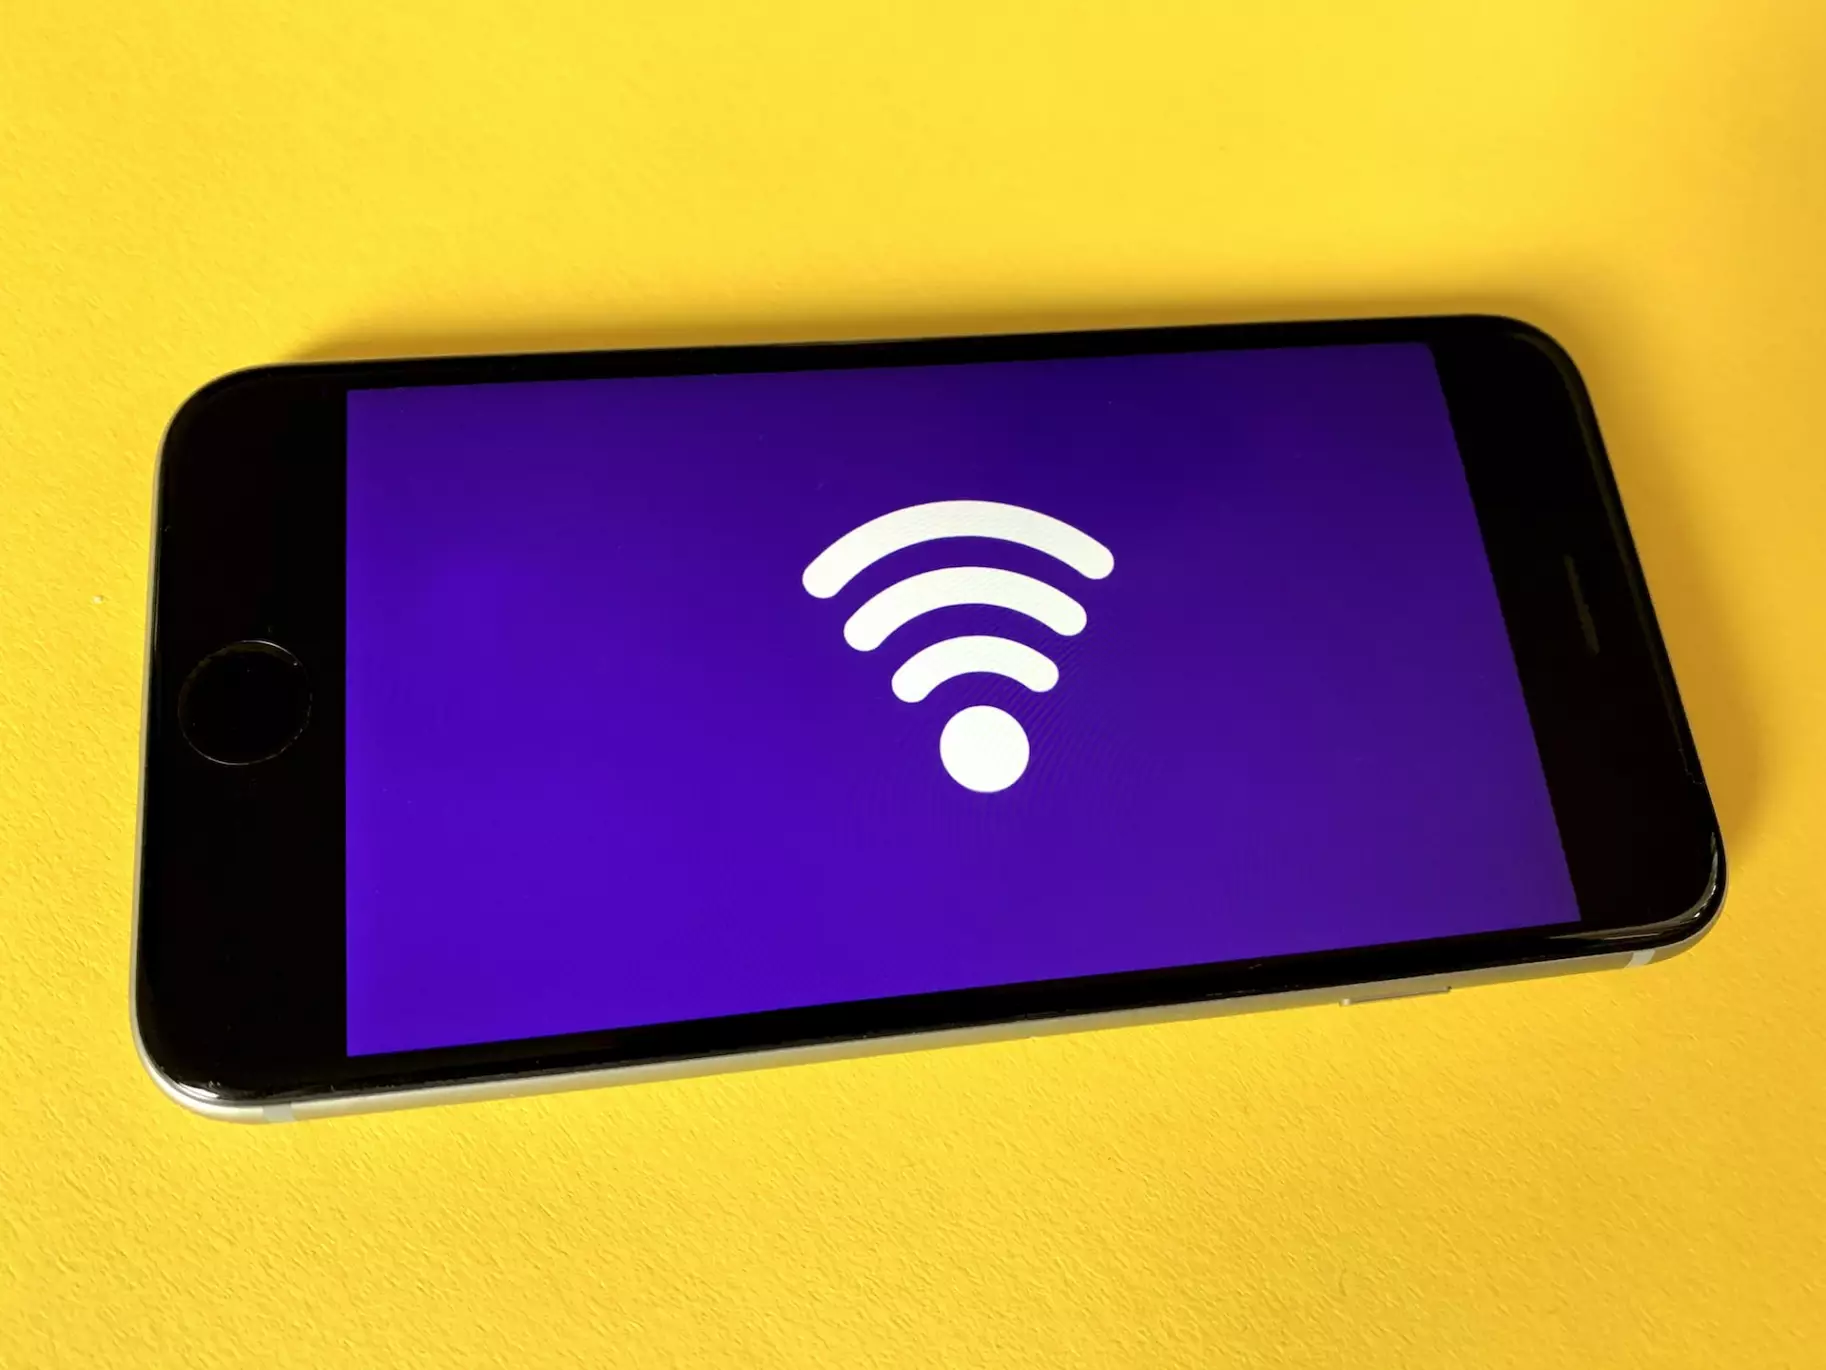 Як налаштувати домашню мережу Wi-Fi, щоб вона була безпечною – поради Держспецзв’язку